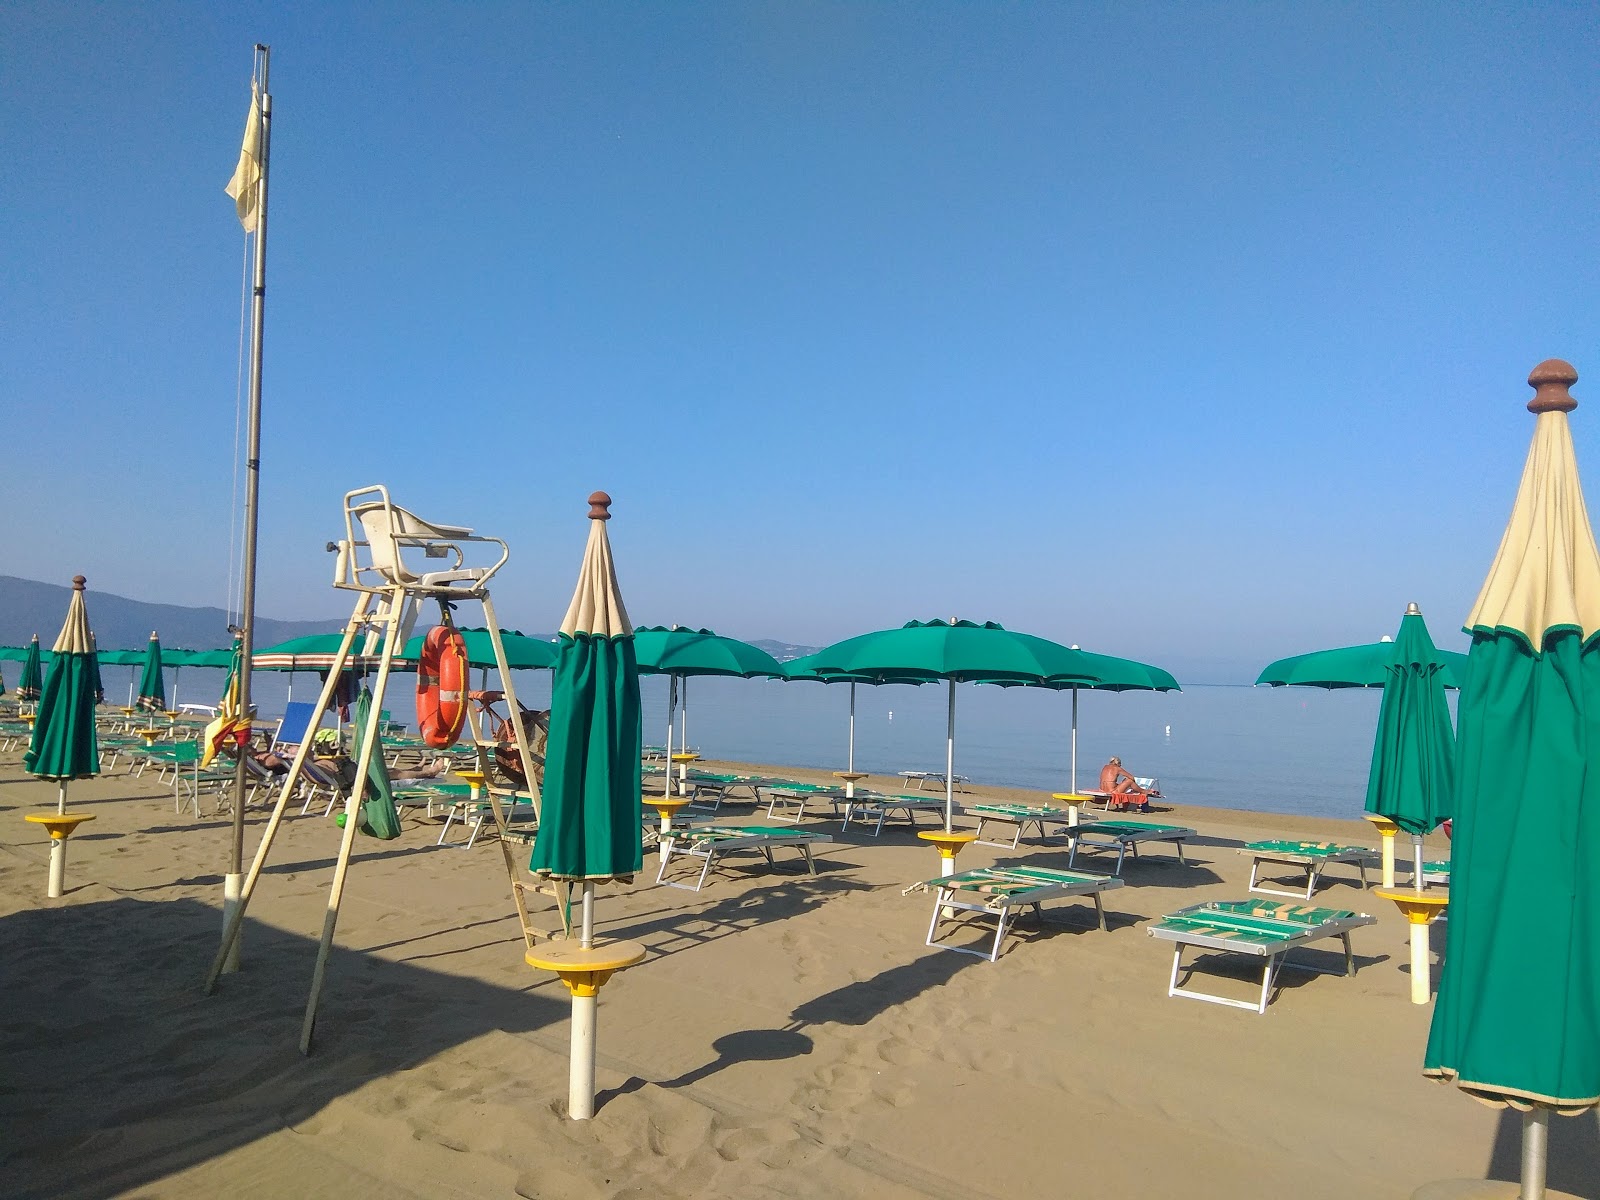 Foto de Spiaggia Florenzo ubicado en área natural